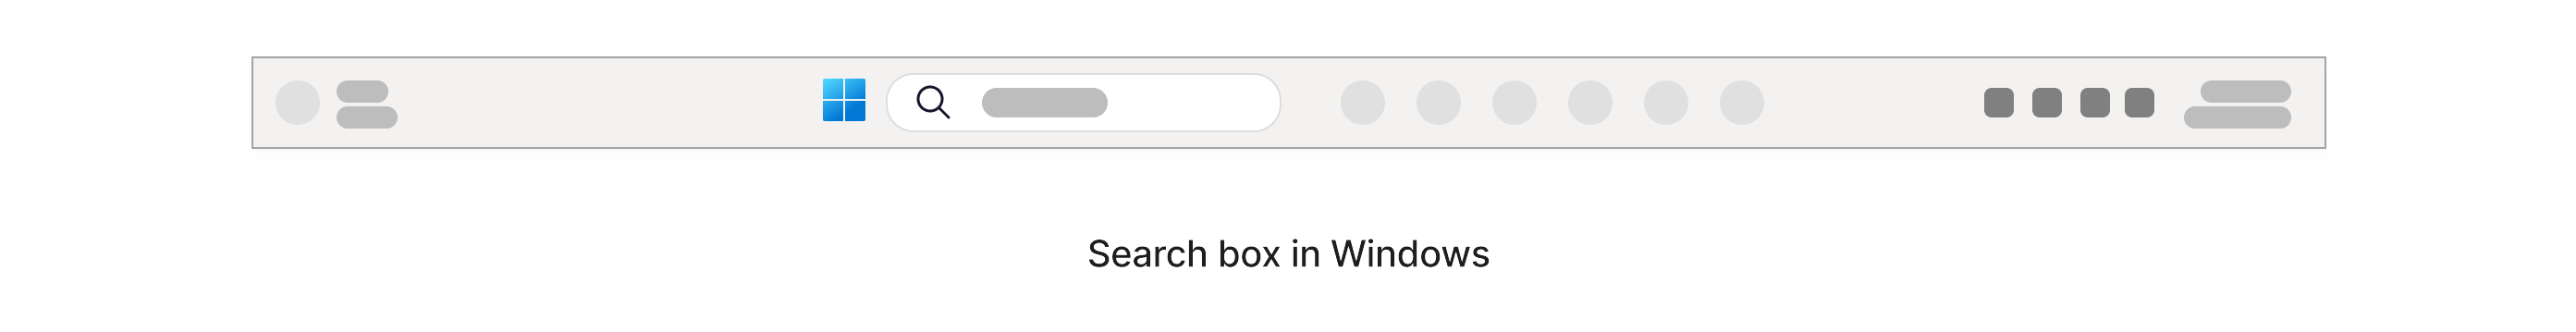 Caseta de căutare cu o pictogramă de mărire în aceasta, amplasată în bara de activități Windows, în partea de jos a ecranului.